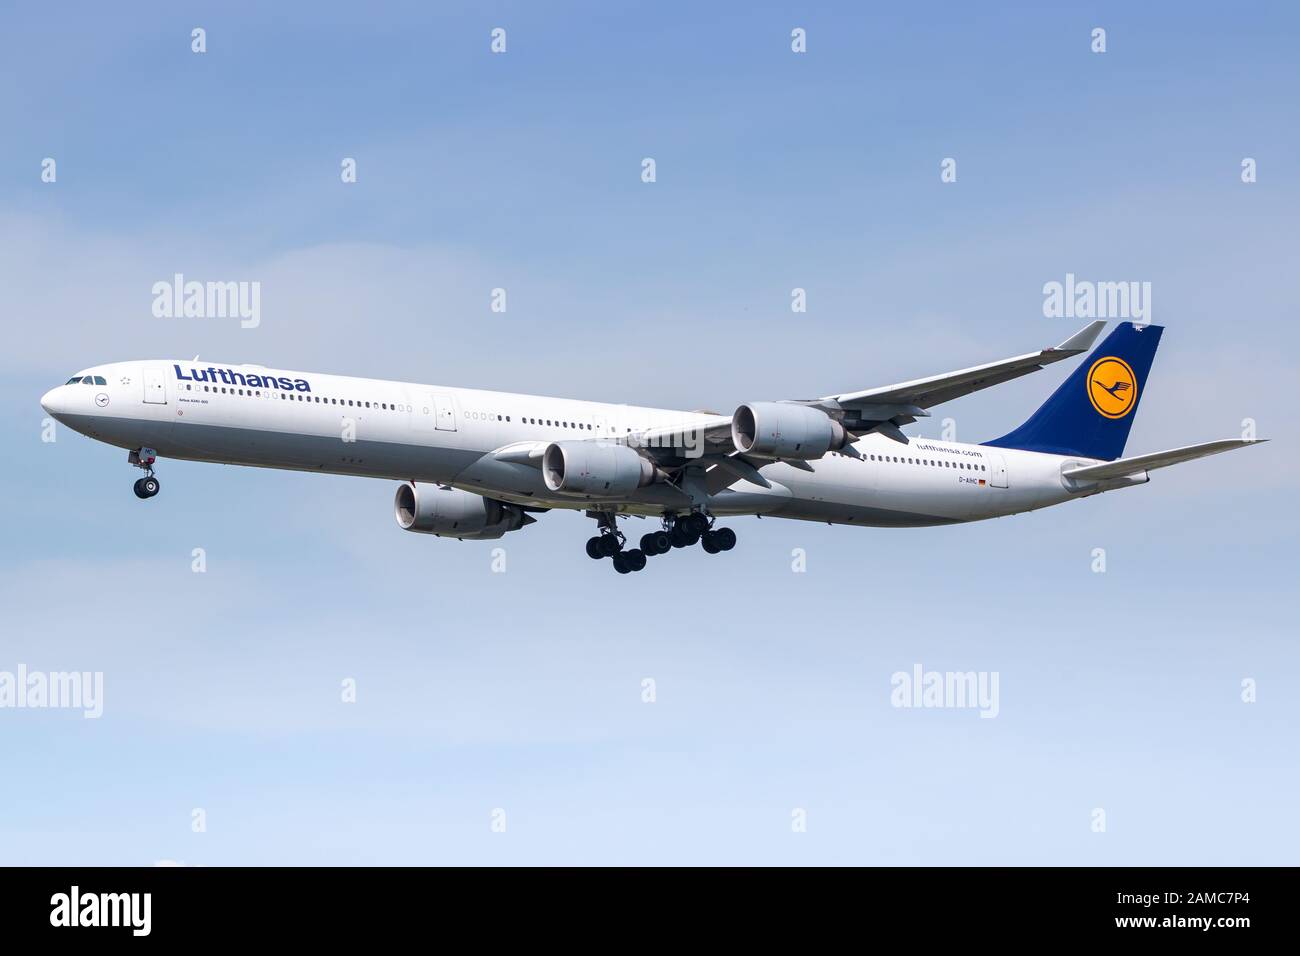 Frankfurt, Deutschland - 22. April 2018: Lufthansa Airbus A340 Flugzeug am Frankfurter Flughafen (FRA) in Deutschland. Airbus ist ein Flugzeughersteller von Stockfoto